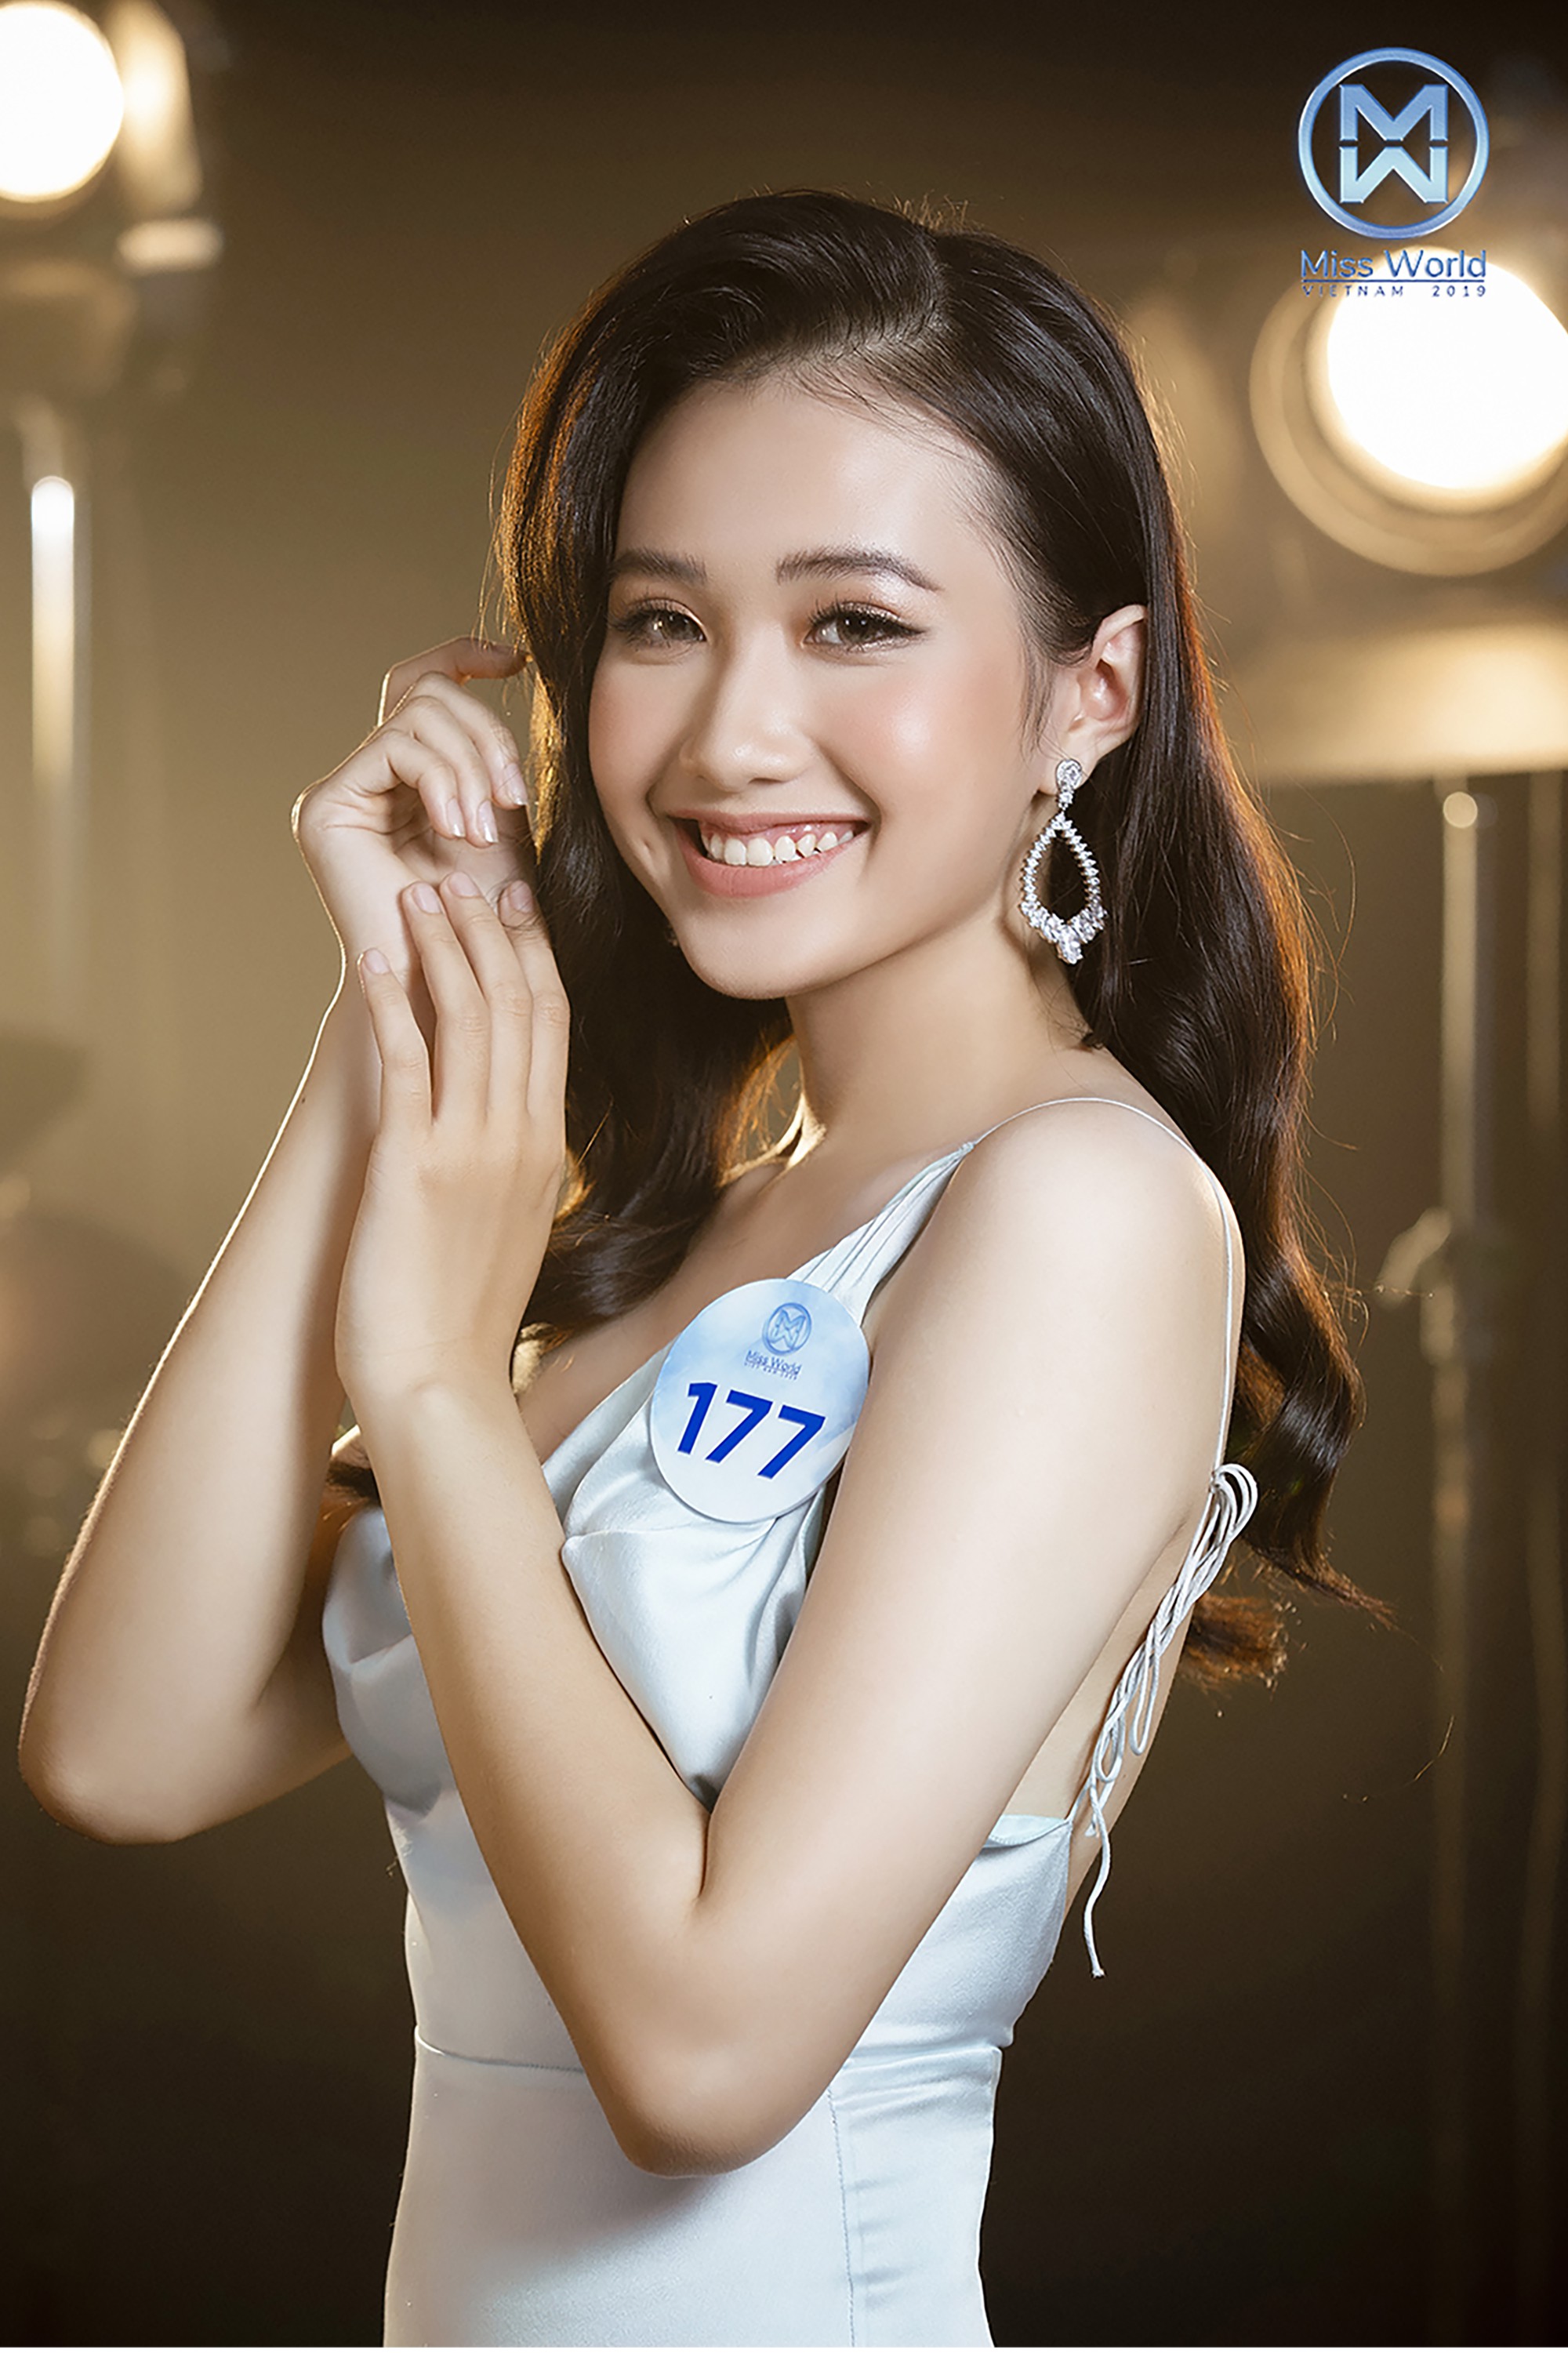 Miss World Việt Nam tung ảnh cực &quot;nuột nà&quot; của 34 người đẹp chung khảo phía Nam, tuyên bố đặc cách thí sinh vào thẳng Chung kết - Ảnh 6.